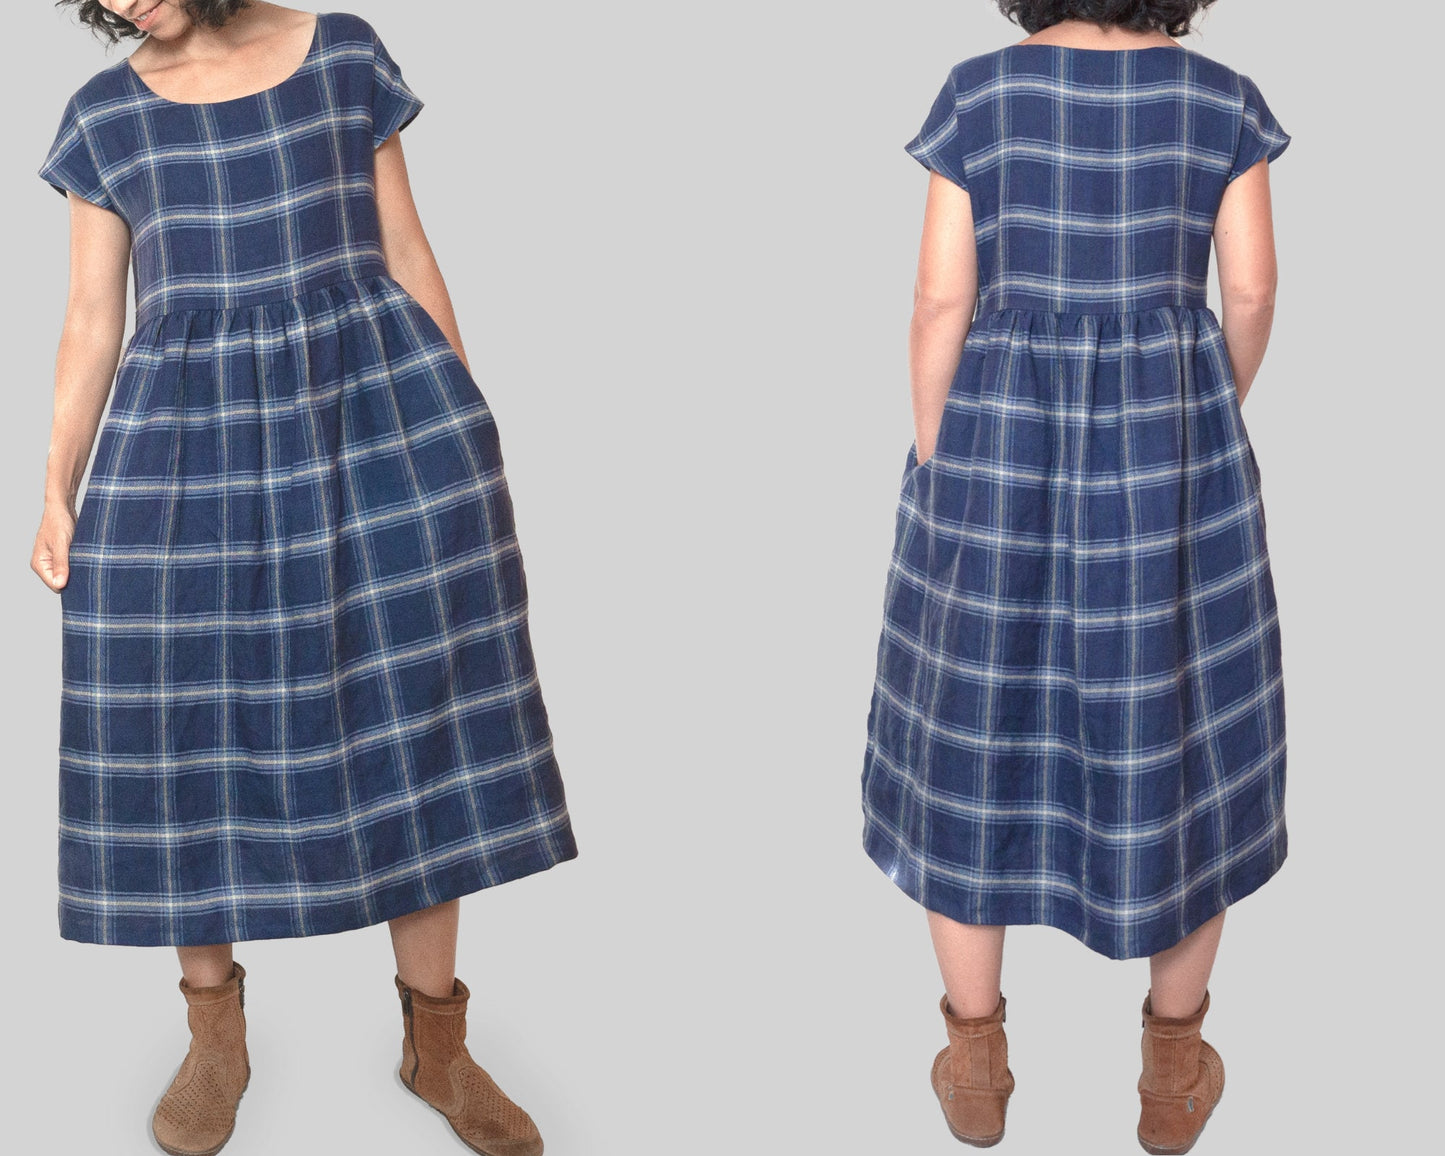 LISTON Smock Dress - sewing pattern